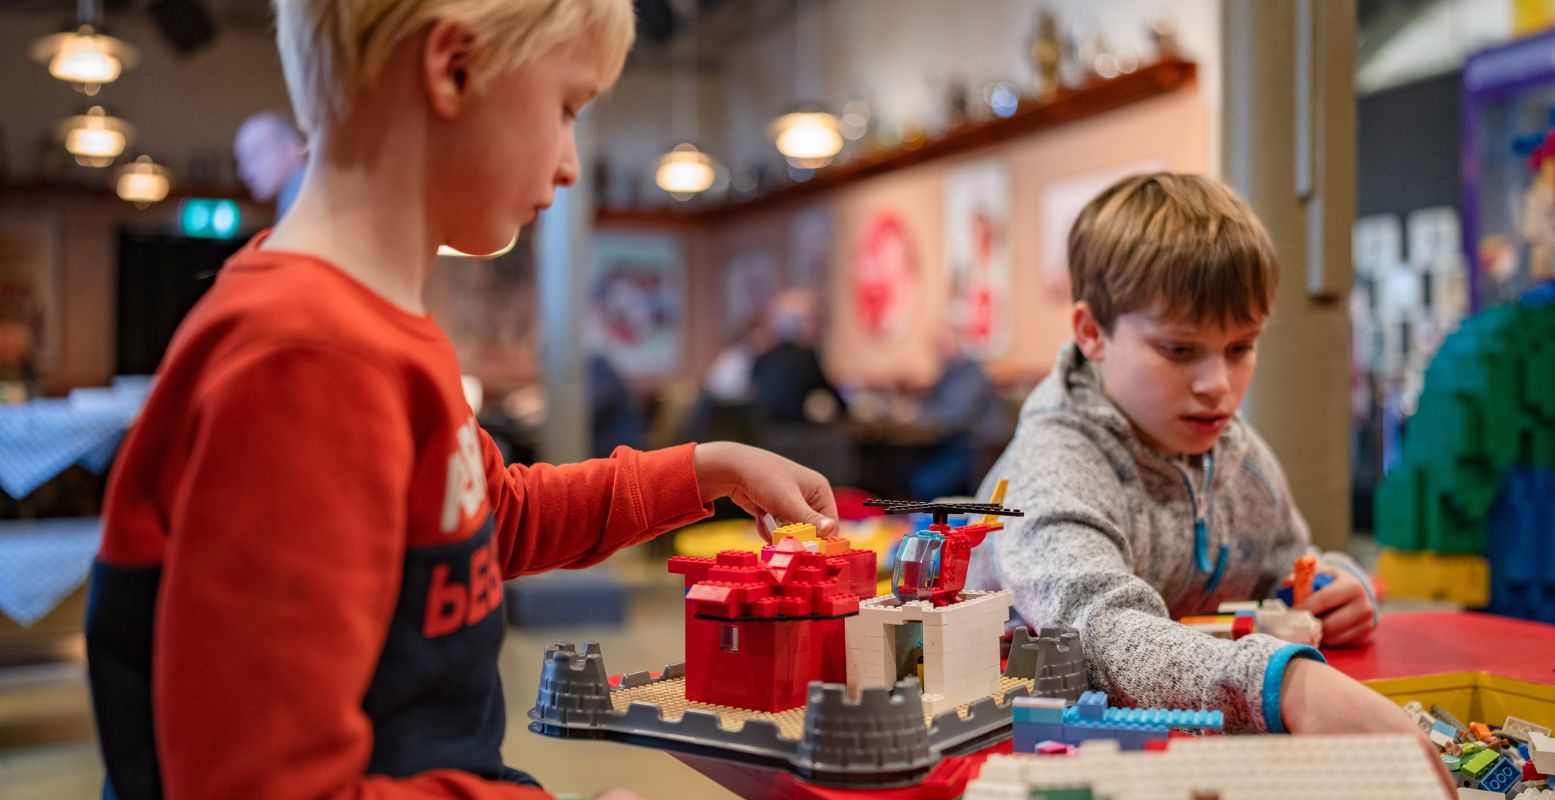 Al die prachtige LEGO-bouwwerken zijn inspirerend. Foto: Benno Ellerbroek / Museum van de Twintigste Eeuw